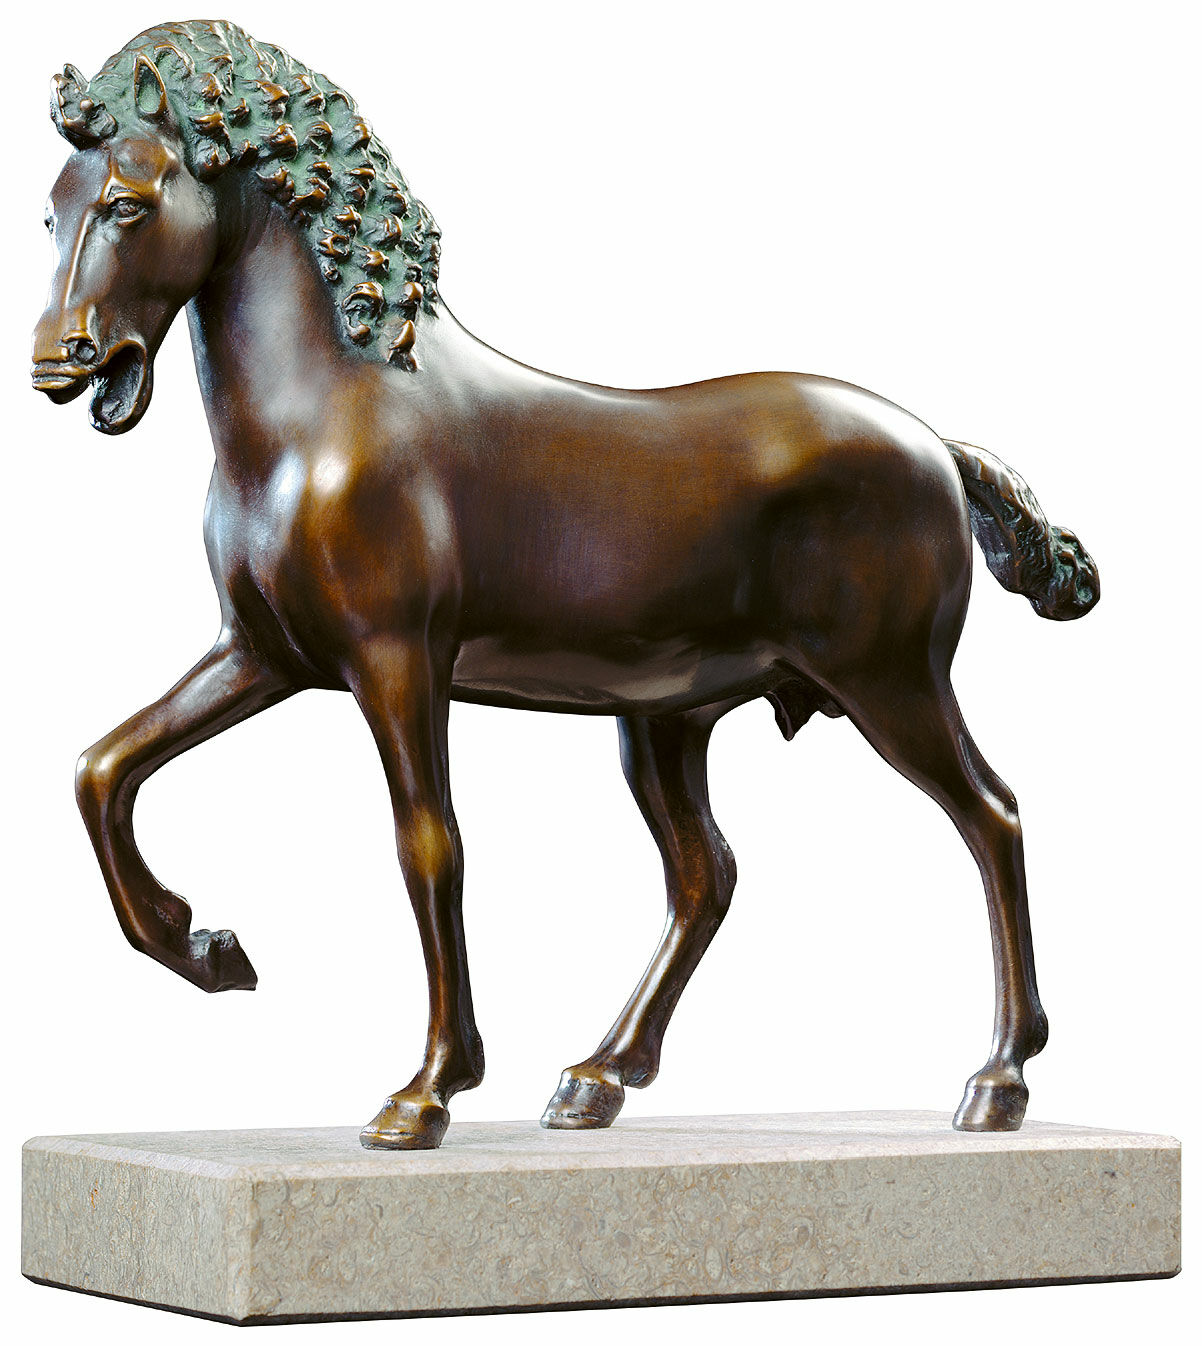 Skulptur "Cavallo" (ca. 1492), bronze von Leonardo da Vinci